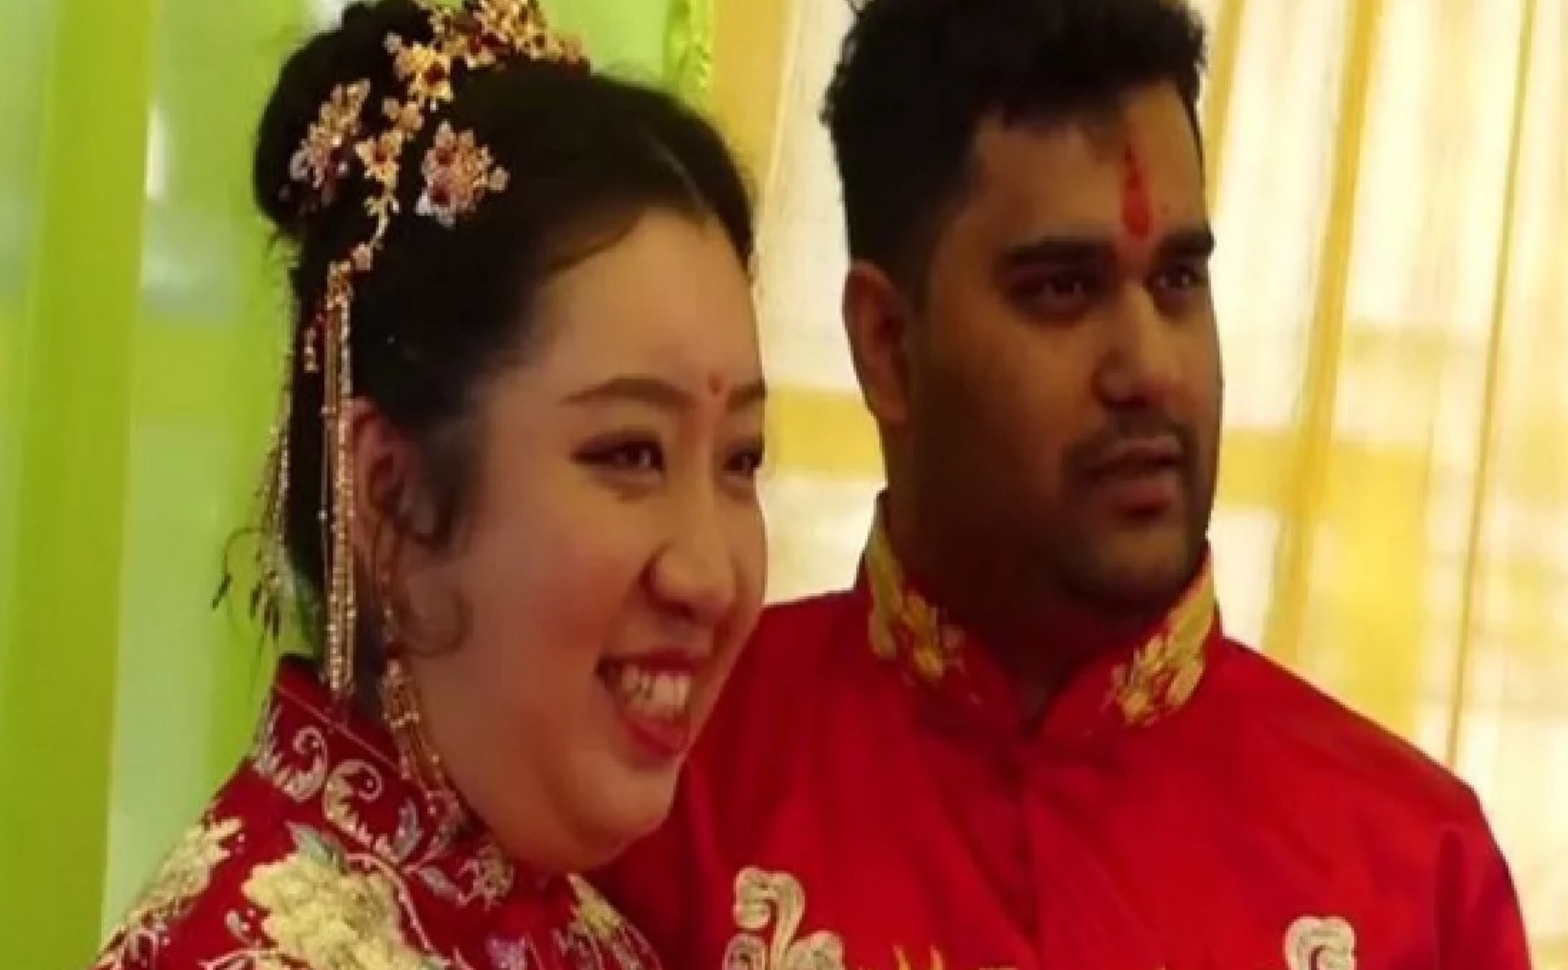 Cô dâu Zhihao Wang và chú rể Satyarth Mishra tổ chức hôn lễ ở Ấn Độ. Ảnh: Twitter